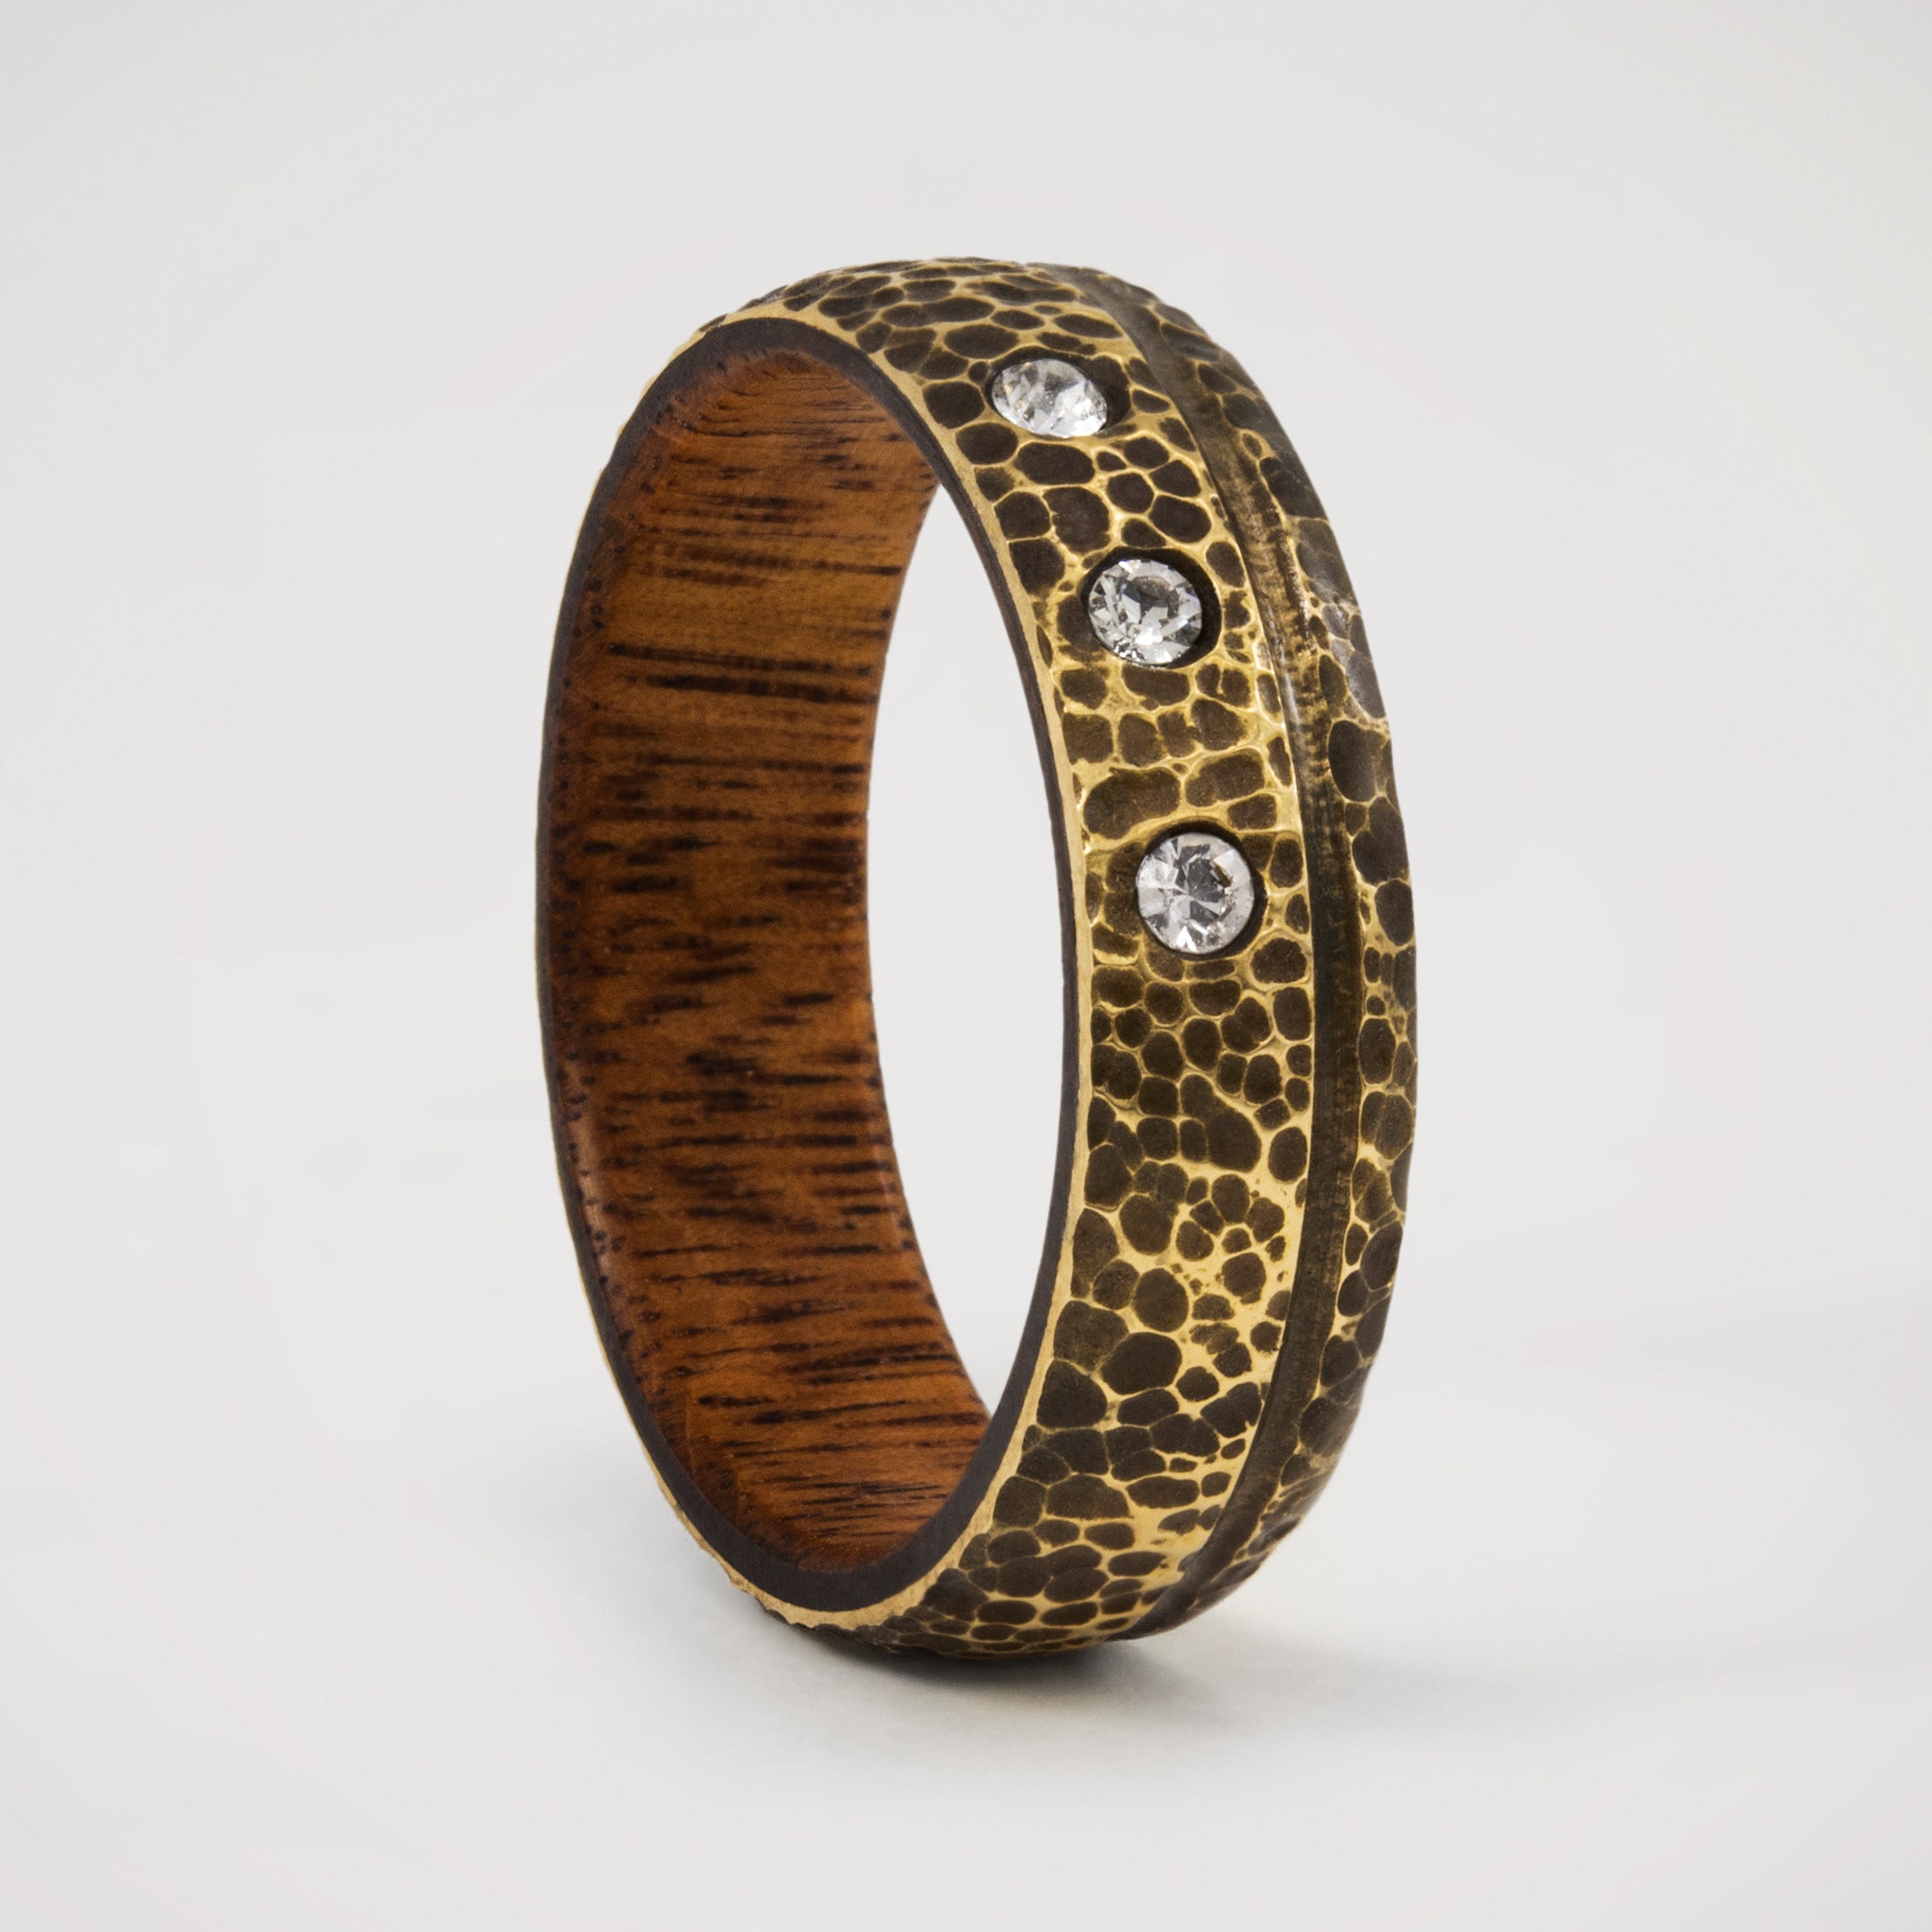 Darkened Bronze & wood Ring